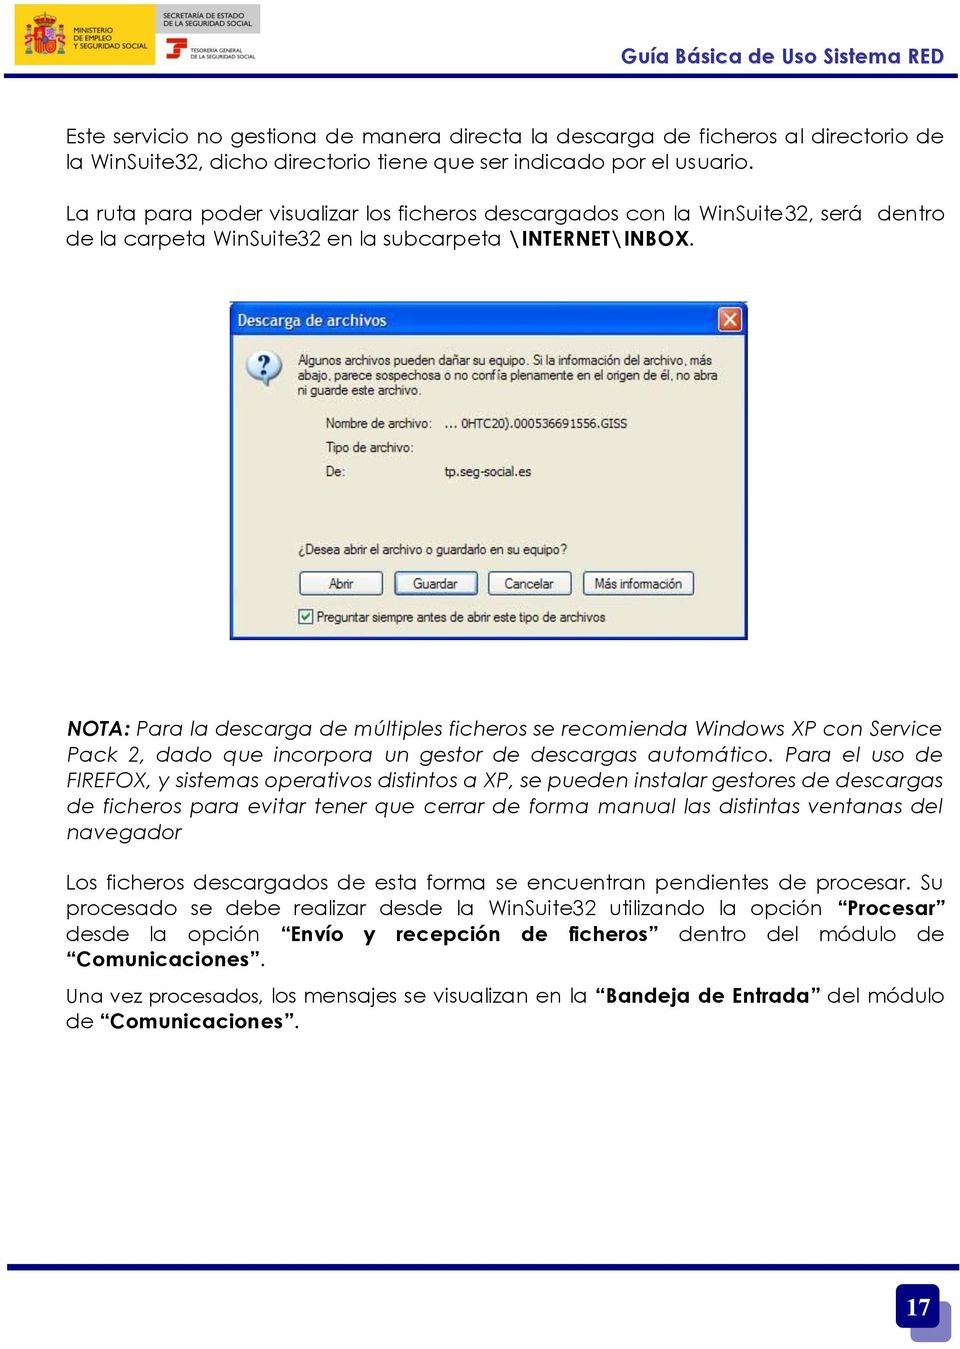 NOTA: Para la descarga de múltiples ficheros se recomienda Windows XP con Service Pack 2, dado que incorpora un gestor de descargas automático.